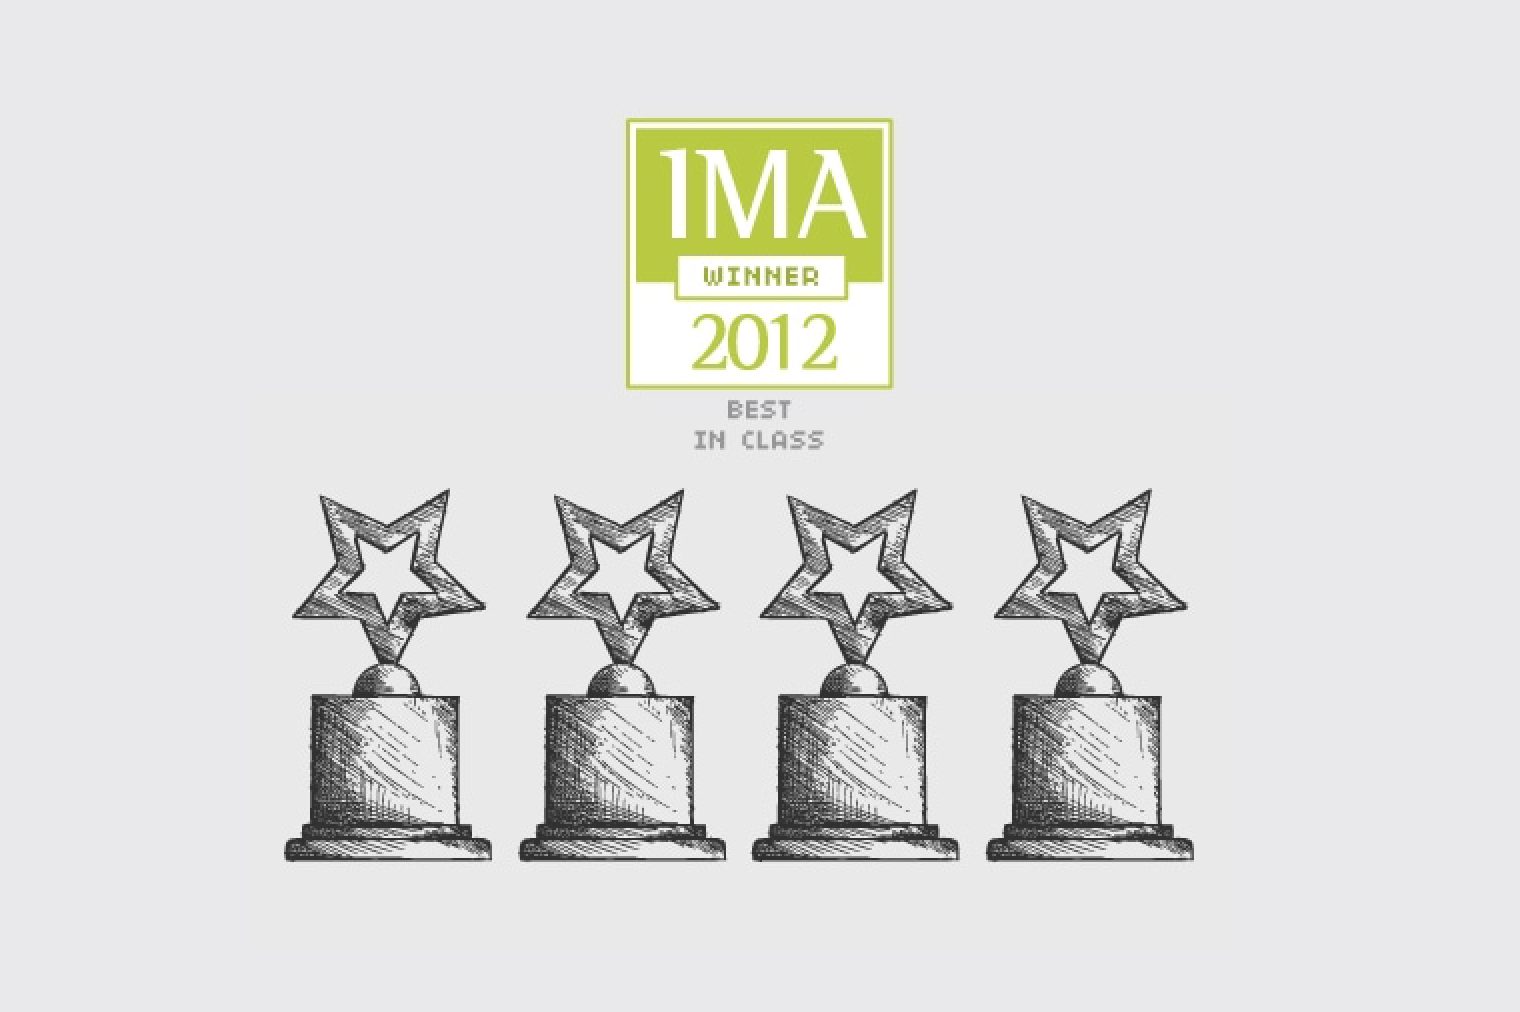 4 IMA awards blog hero image.